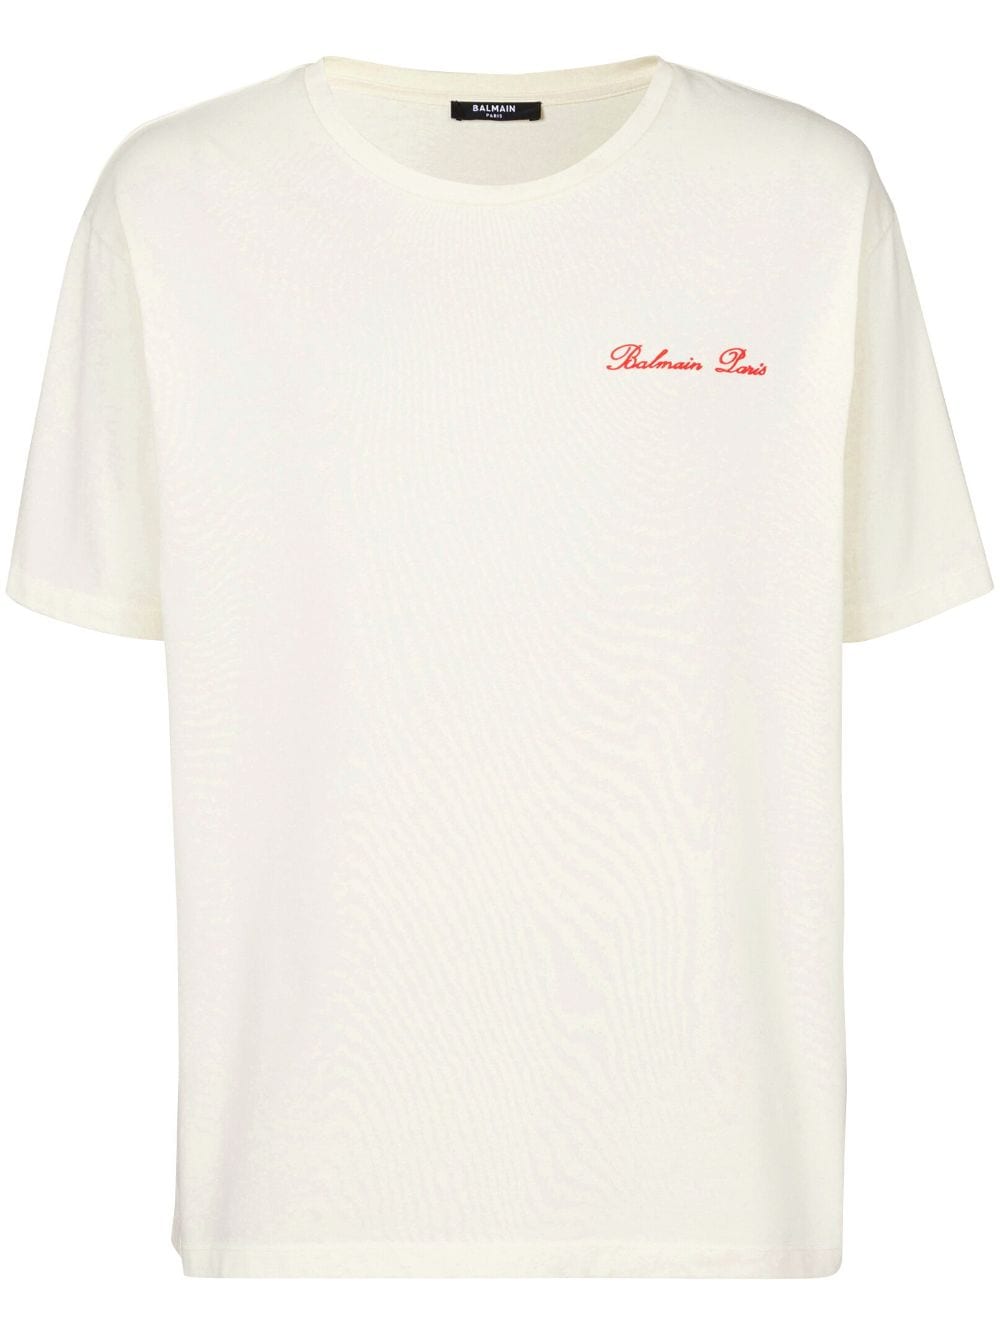 T-shirt in cotone con logo ricamato<br><br><br>